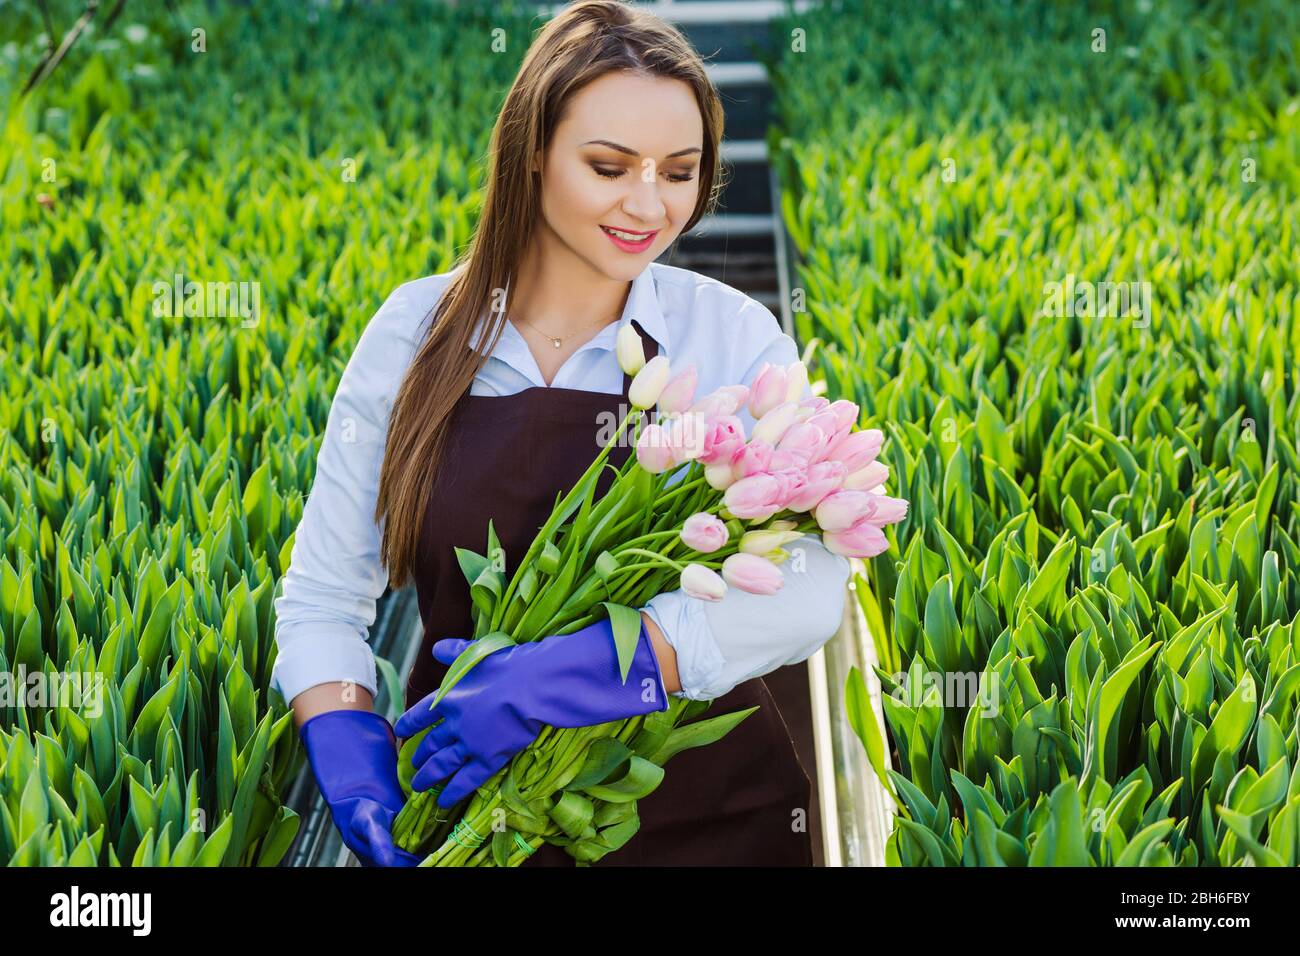 Schöne junge Frau mit einem perfekten Lächeln, hält einen großen Strauß Tulpen, Blick auf die Blumen, in einem Gewächshaus stehen Stockfoto